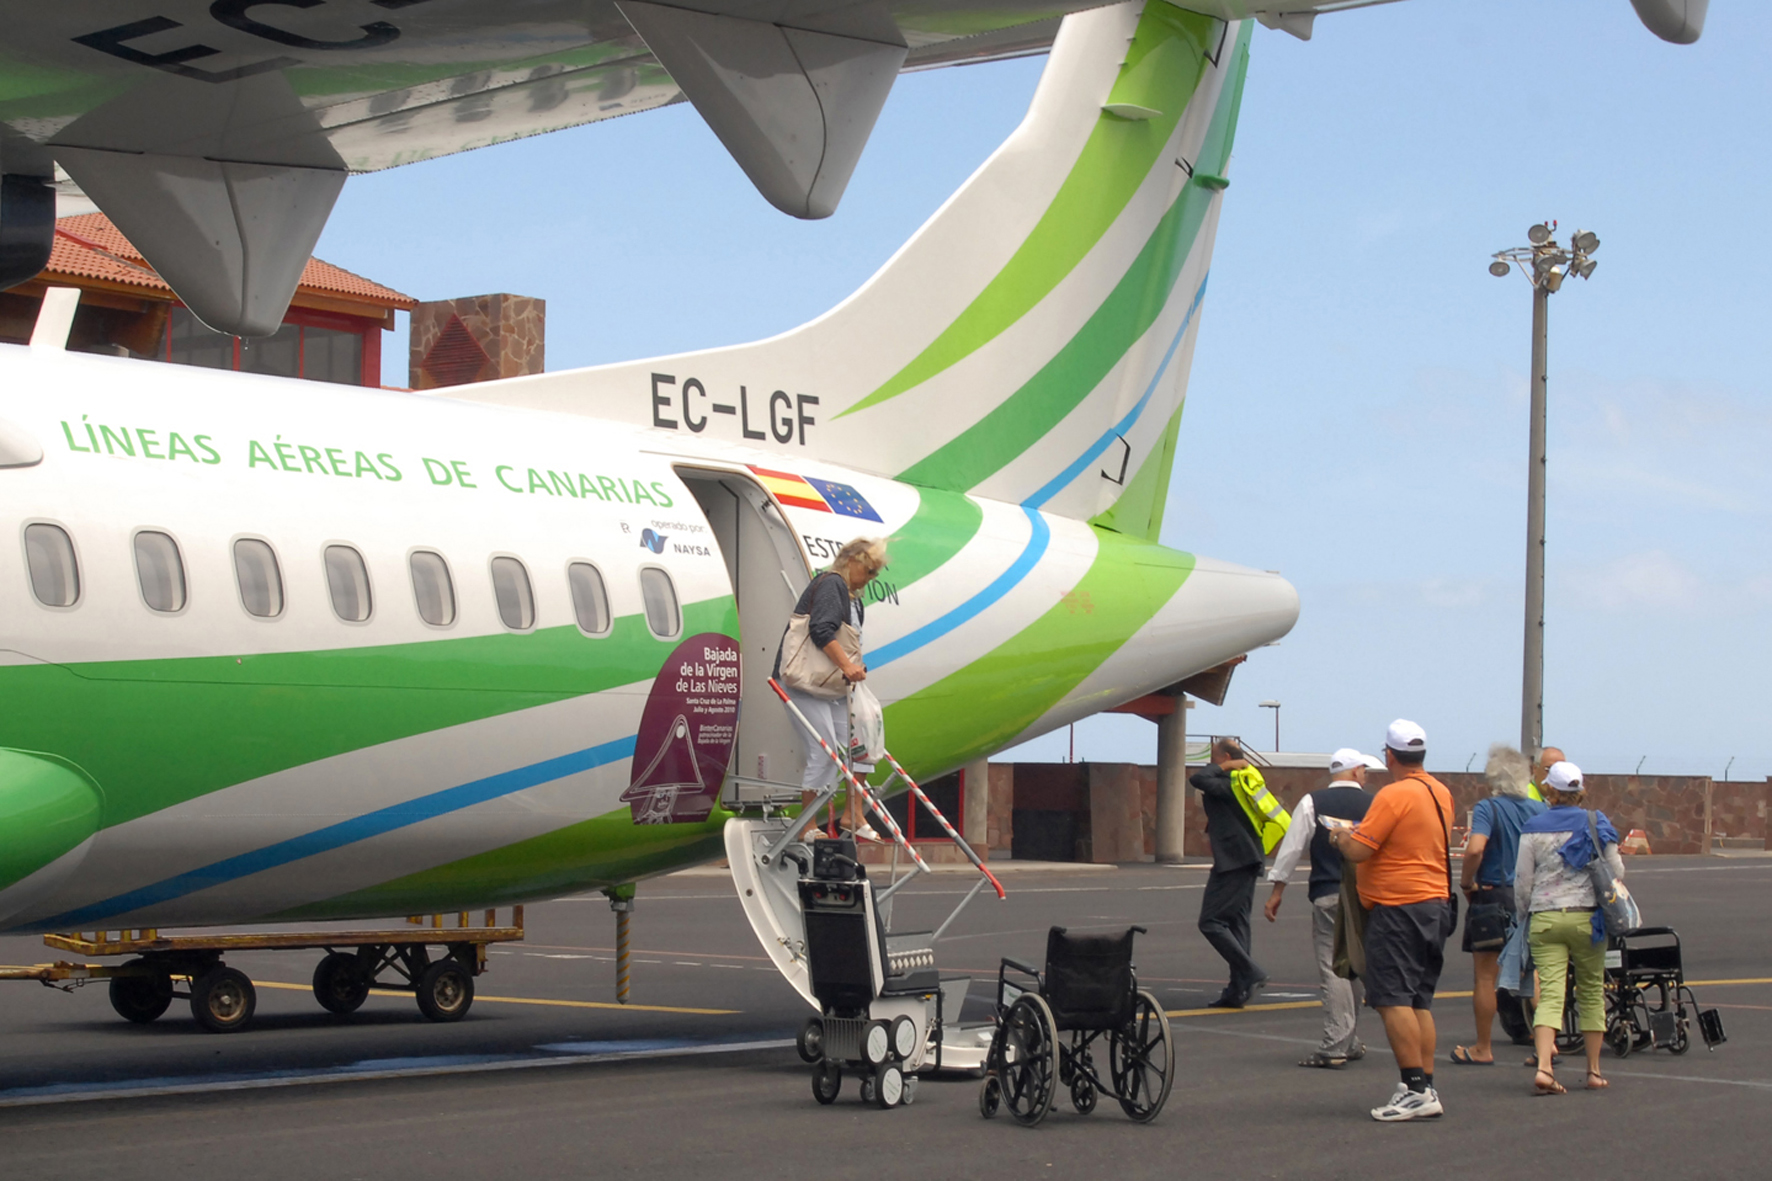 El aeropuerto de Los Cangrejos en El Hierro atendió a 1.253 personas con movilidad reducida en 2019